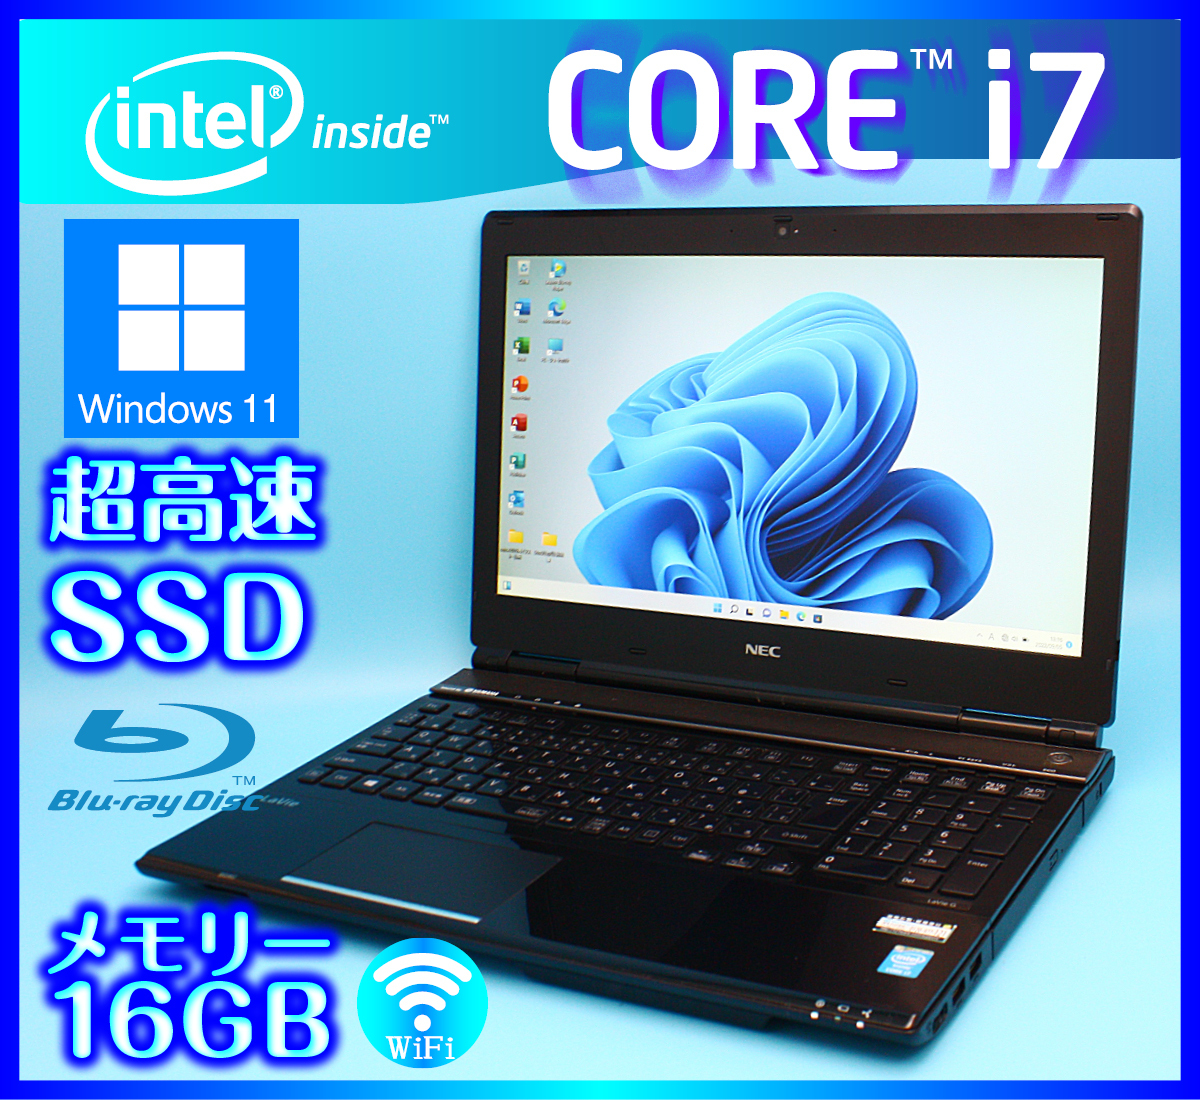 NEC メモリ 16GB【フルHD液晶 Core i7 4700MQ 超速SSD新品512GB+HDD1000GB】Windows11 ブラック 4コア Office2019搭載 Webカメラ GN247B/G1